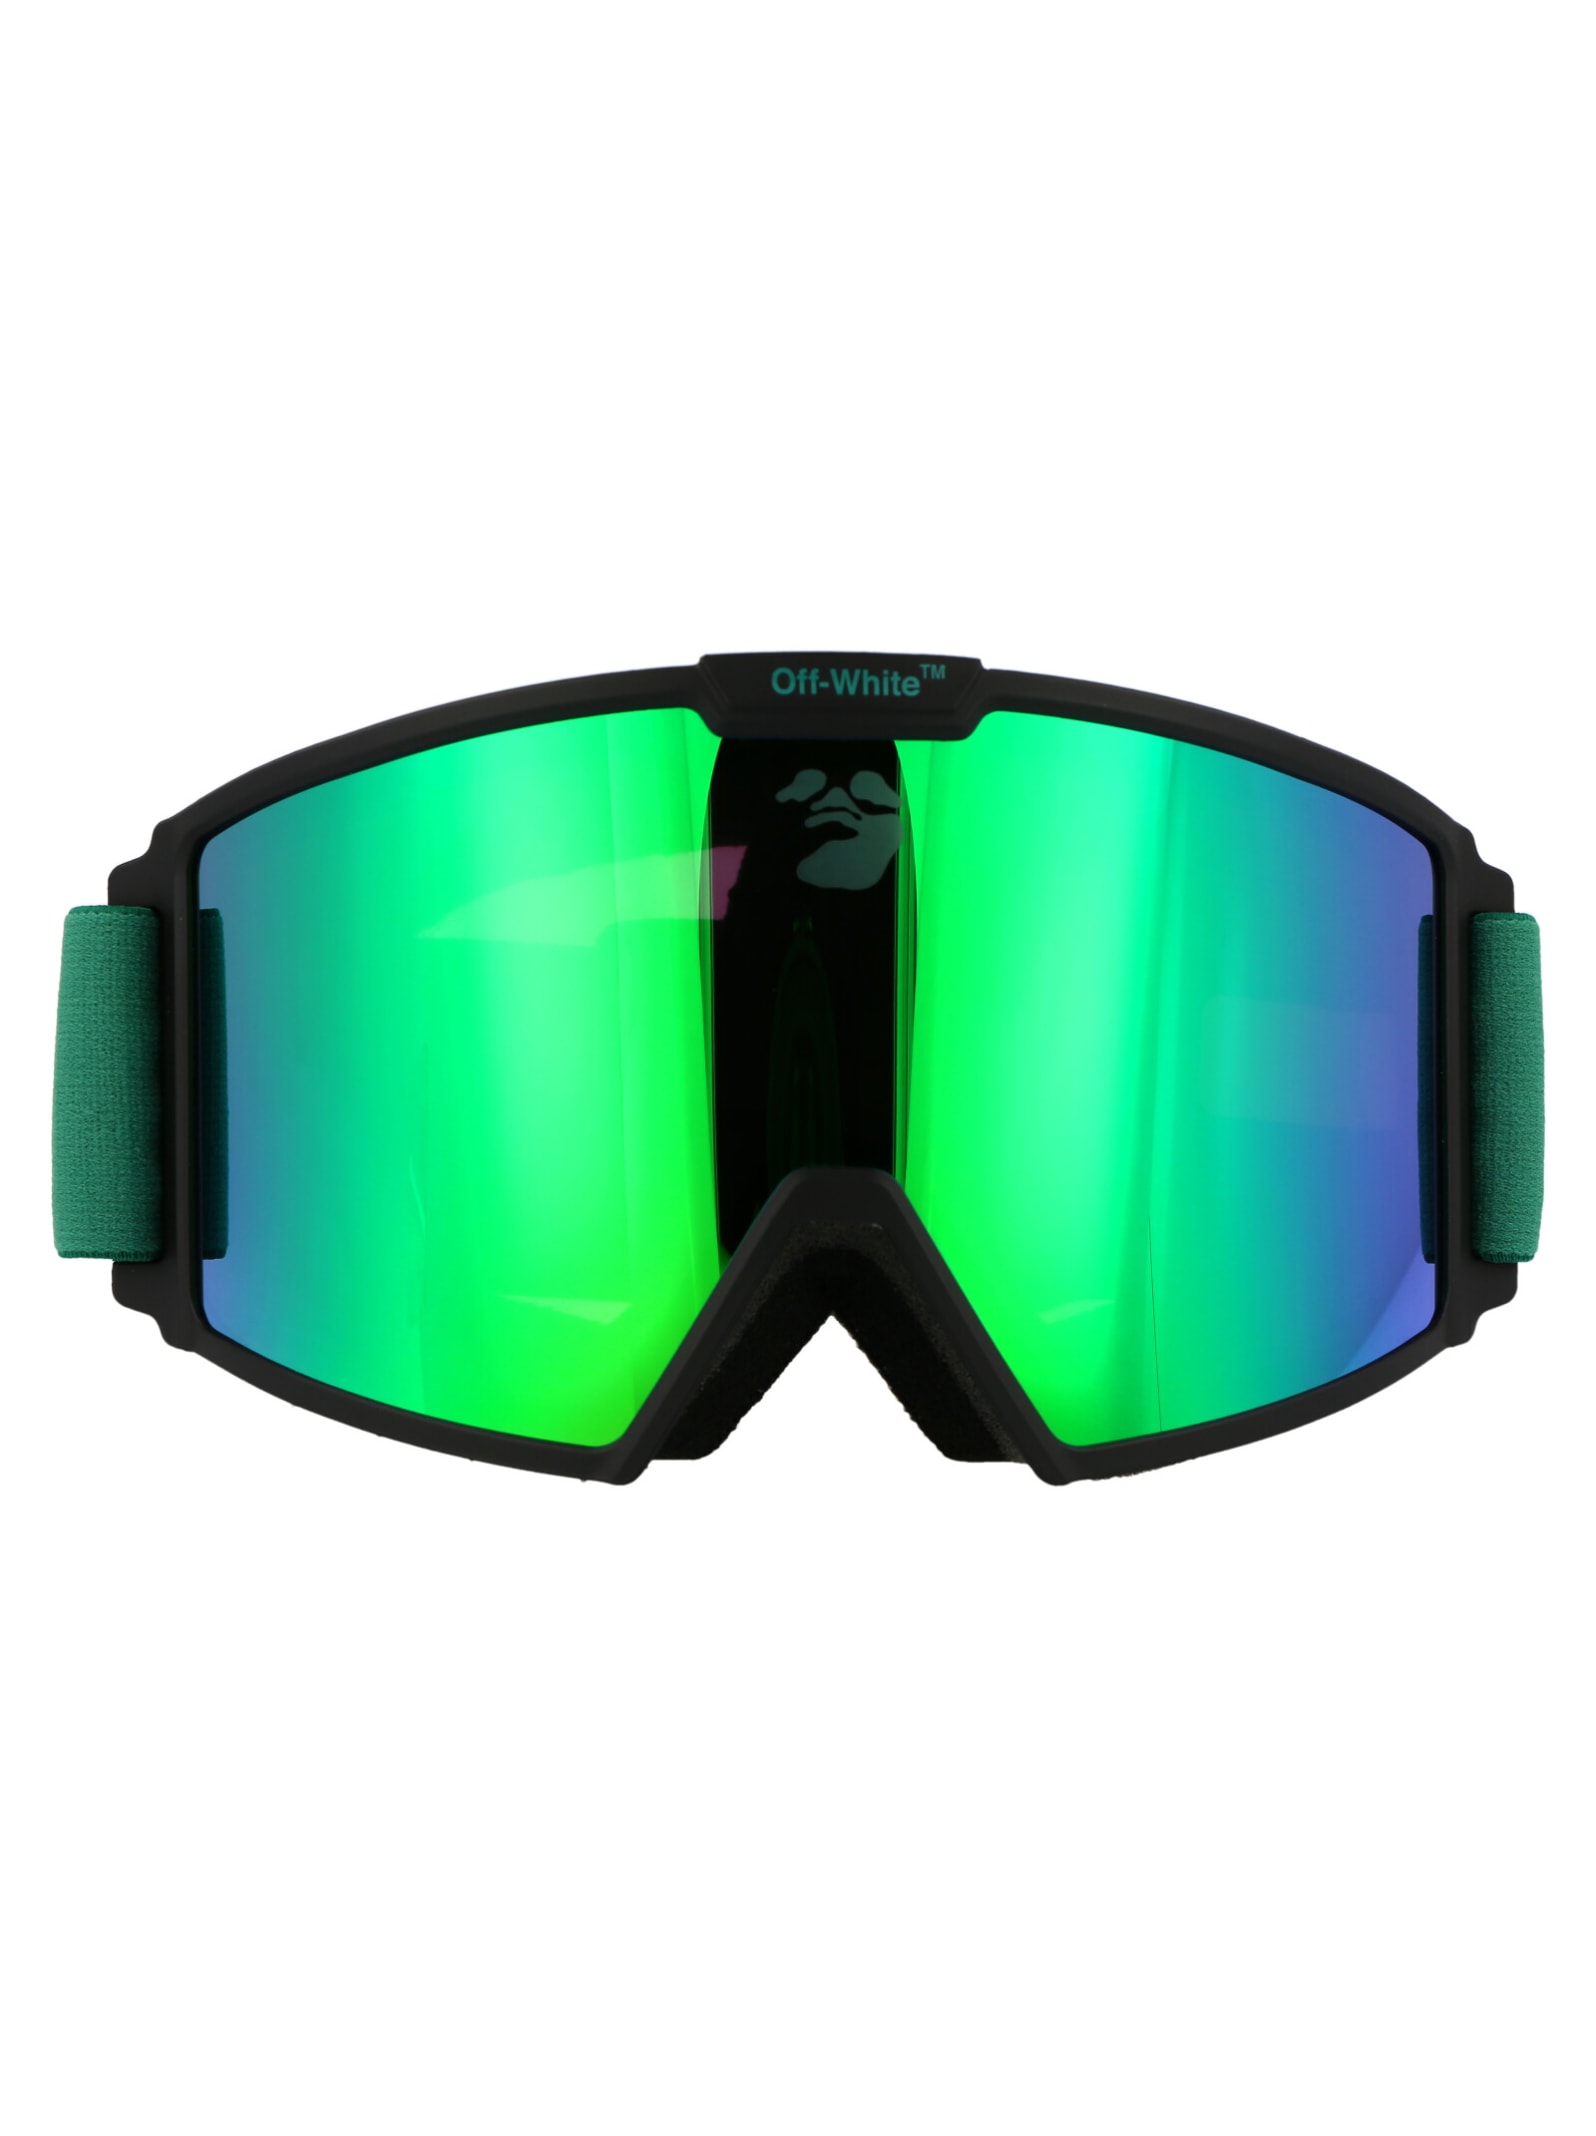 Off-White Ski Goggle Sunglasses